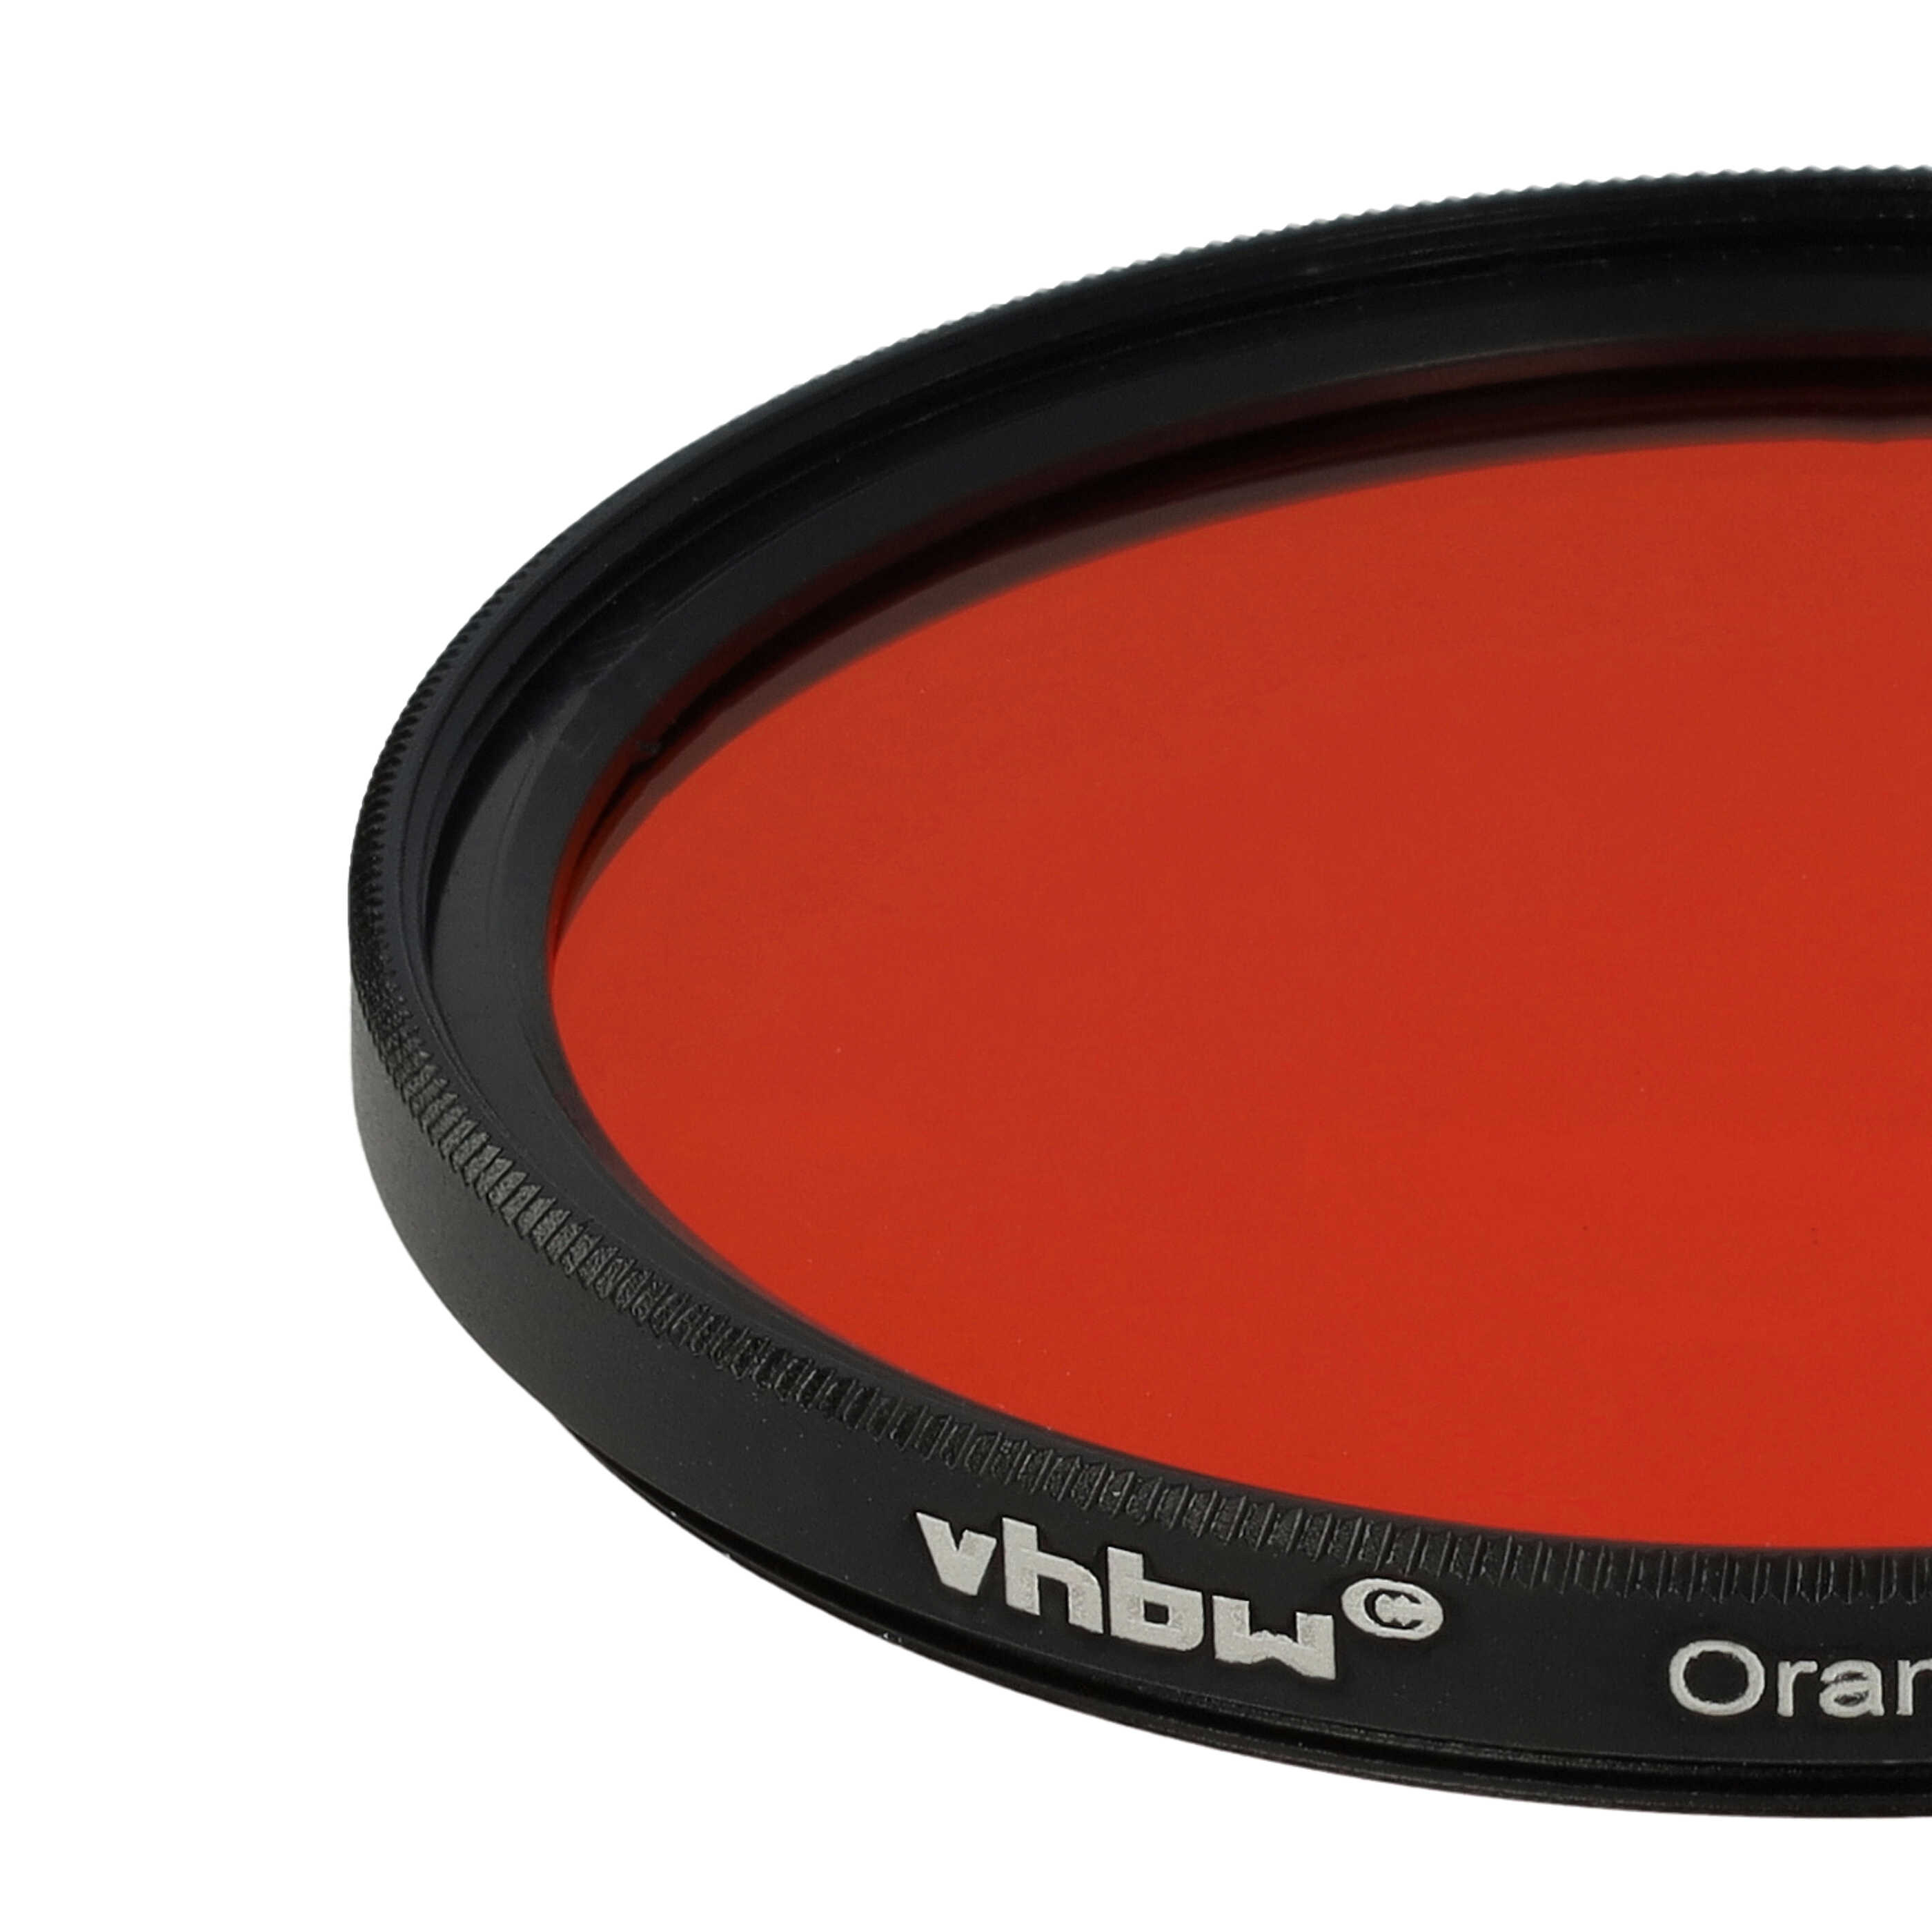 Filtre de couleur orange pour objectifs d'appareils photo de 58 mm - Filtre orange